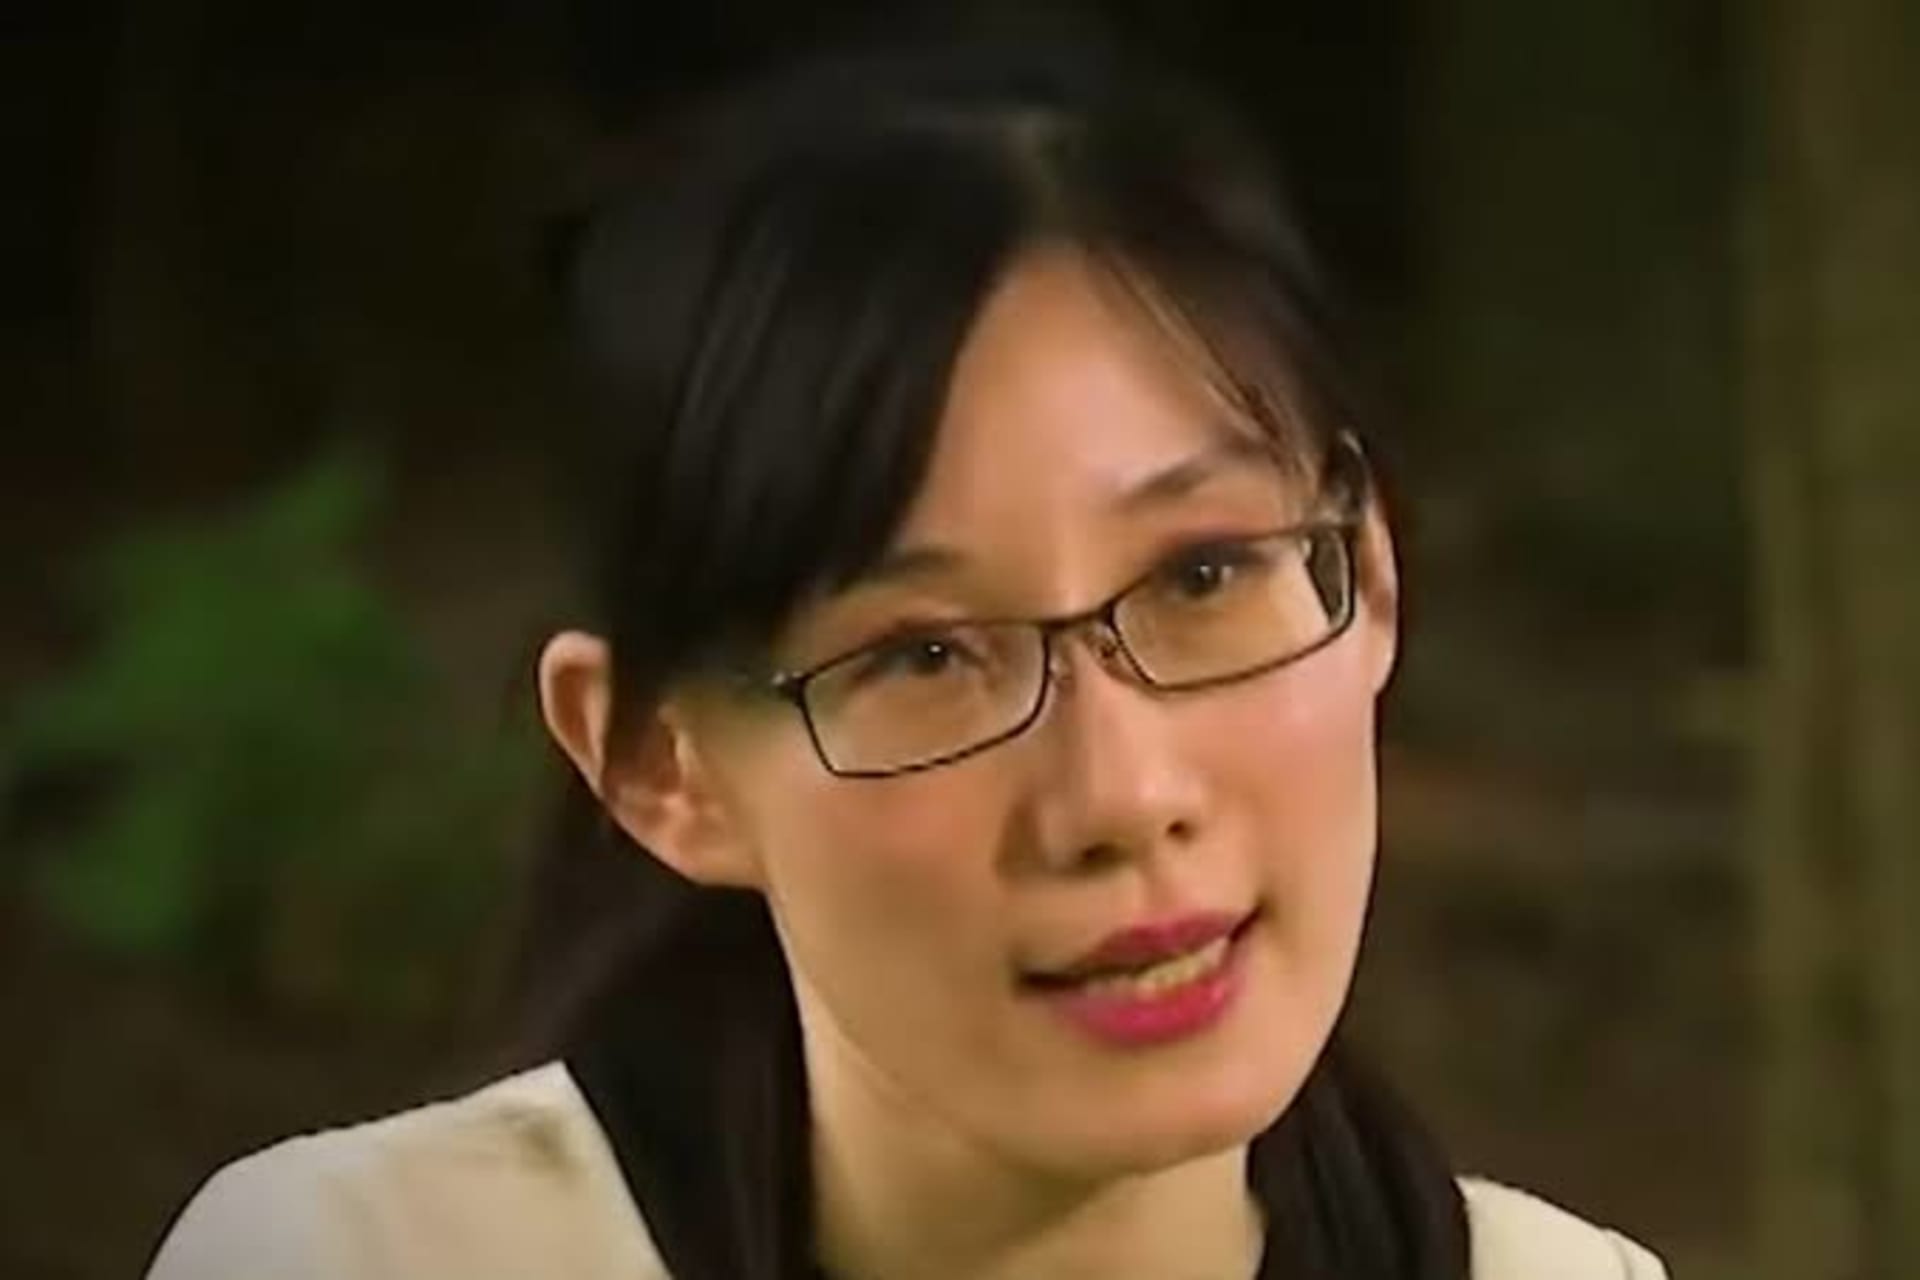 Viroložka Li-Meng Yan prý ze strachu z čínské vády uprchla do USA. 